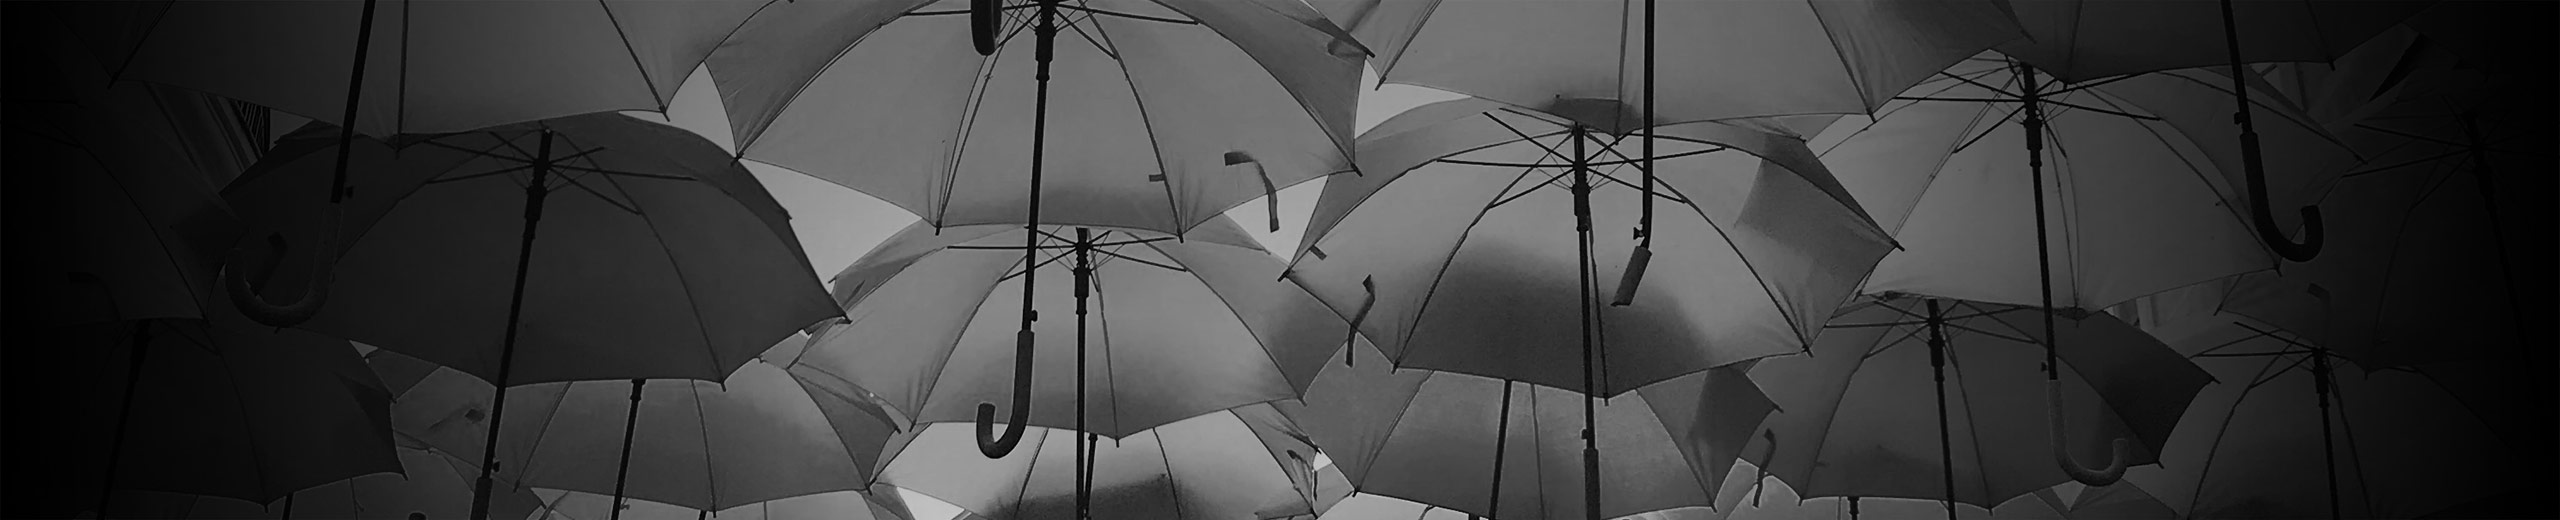 Mange paraplyer daler mod jorden og skærmer af